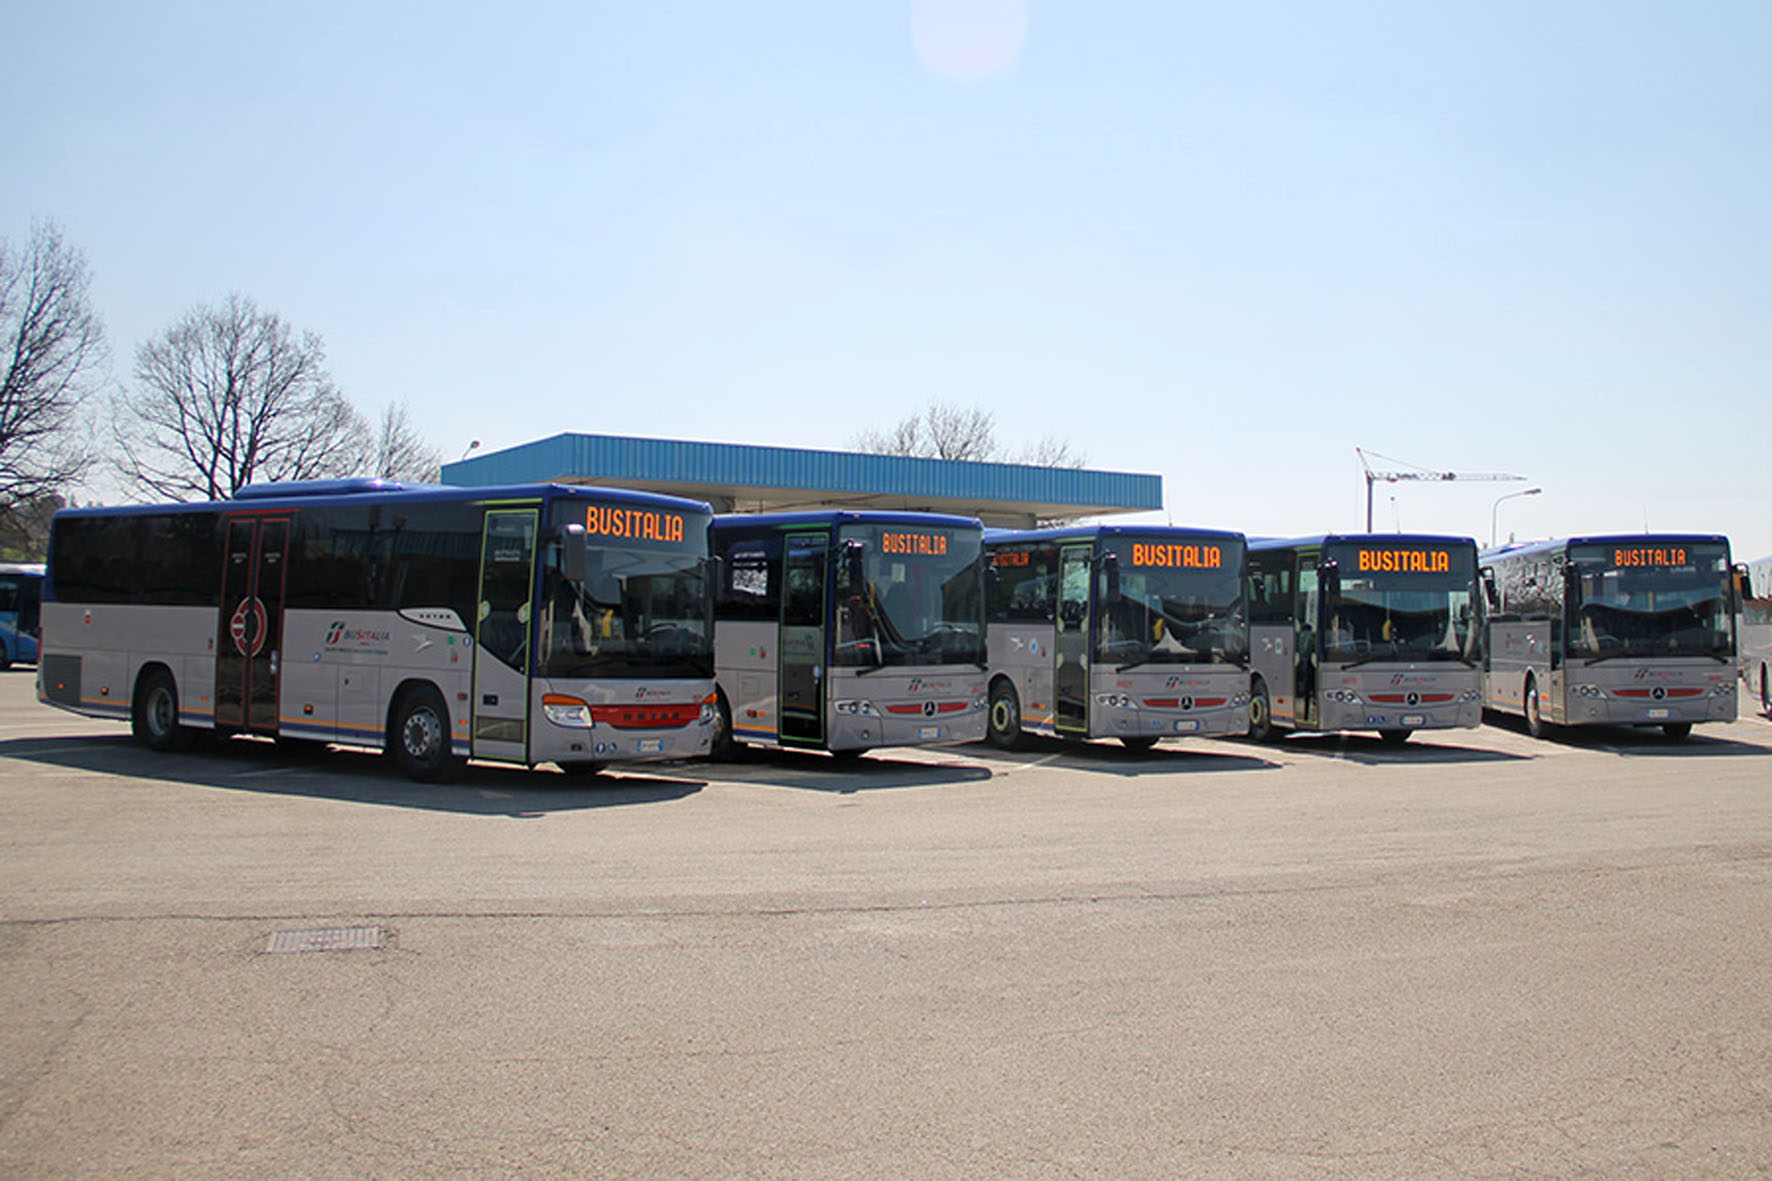 nuovi autobus mercedes intouro busitalia vallate, valtiberina foto arrivate comunicato 9 aprile 2015